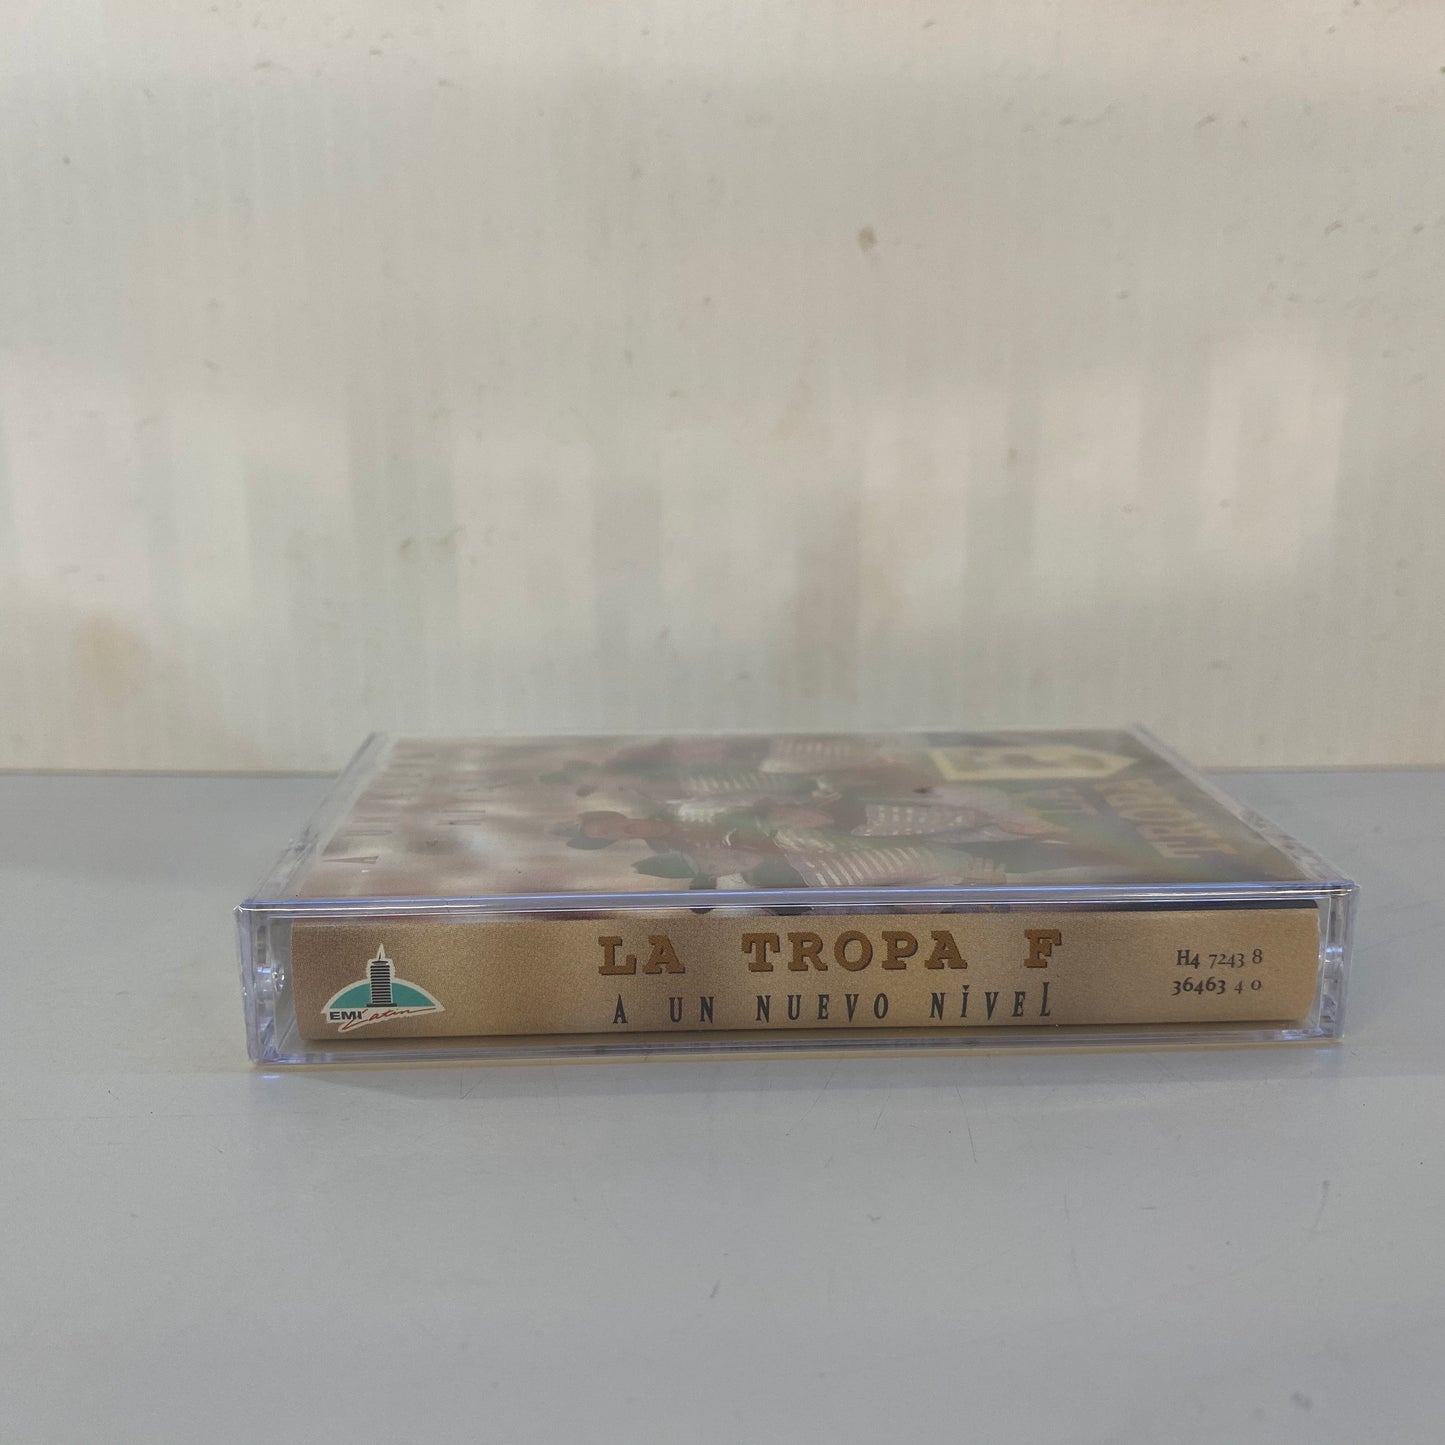 La Tropa F - A Un Nuevo Nivel (Cassette)